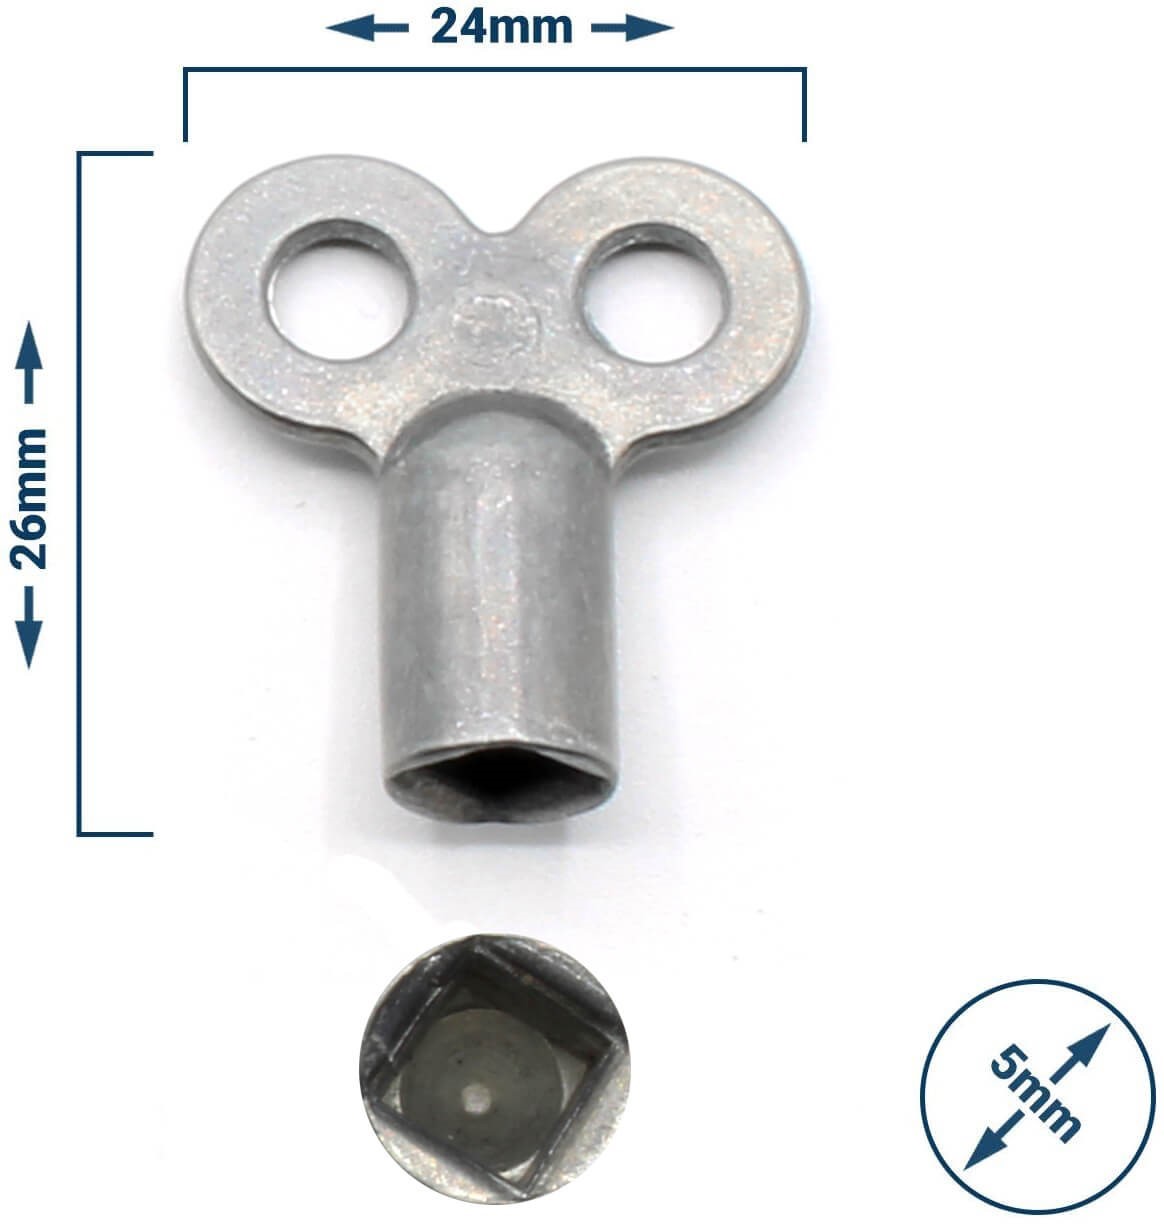 Heizungsentlüftungsschlüssel 5mm (1 Stück) Zinkdruckguss unbehandelt Heizungsentlüfter Schlüssel